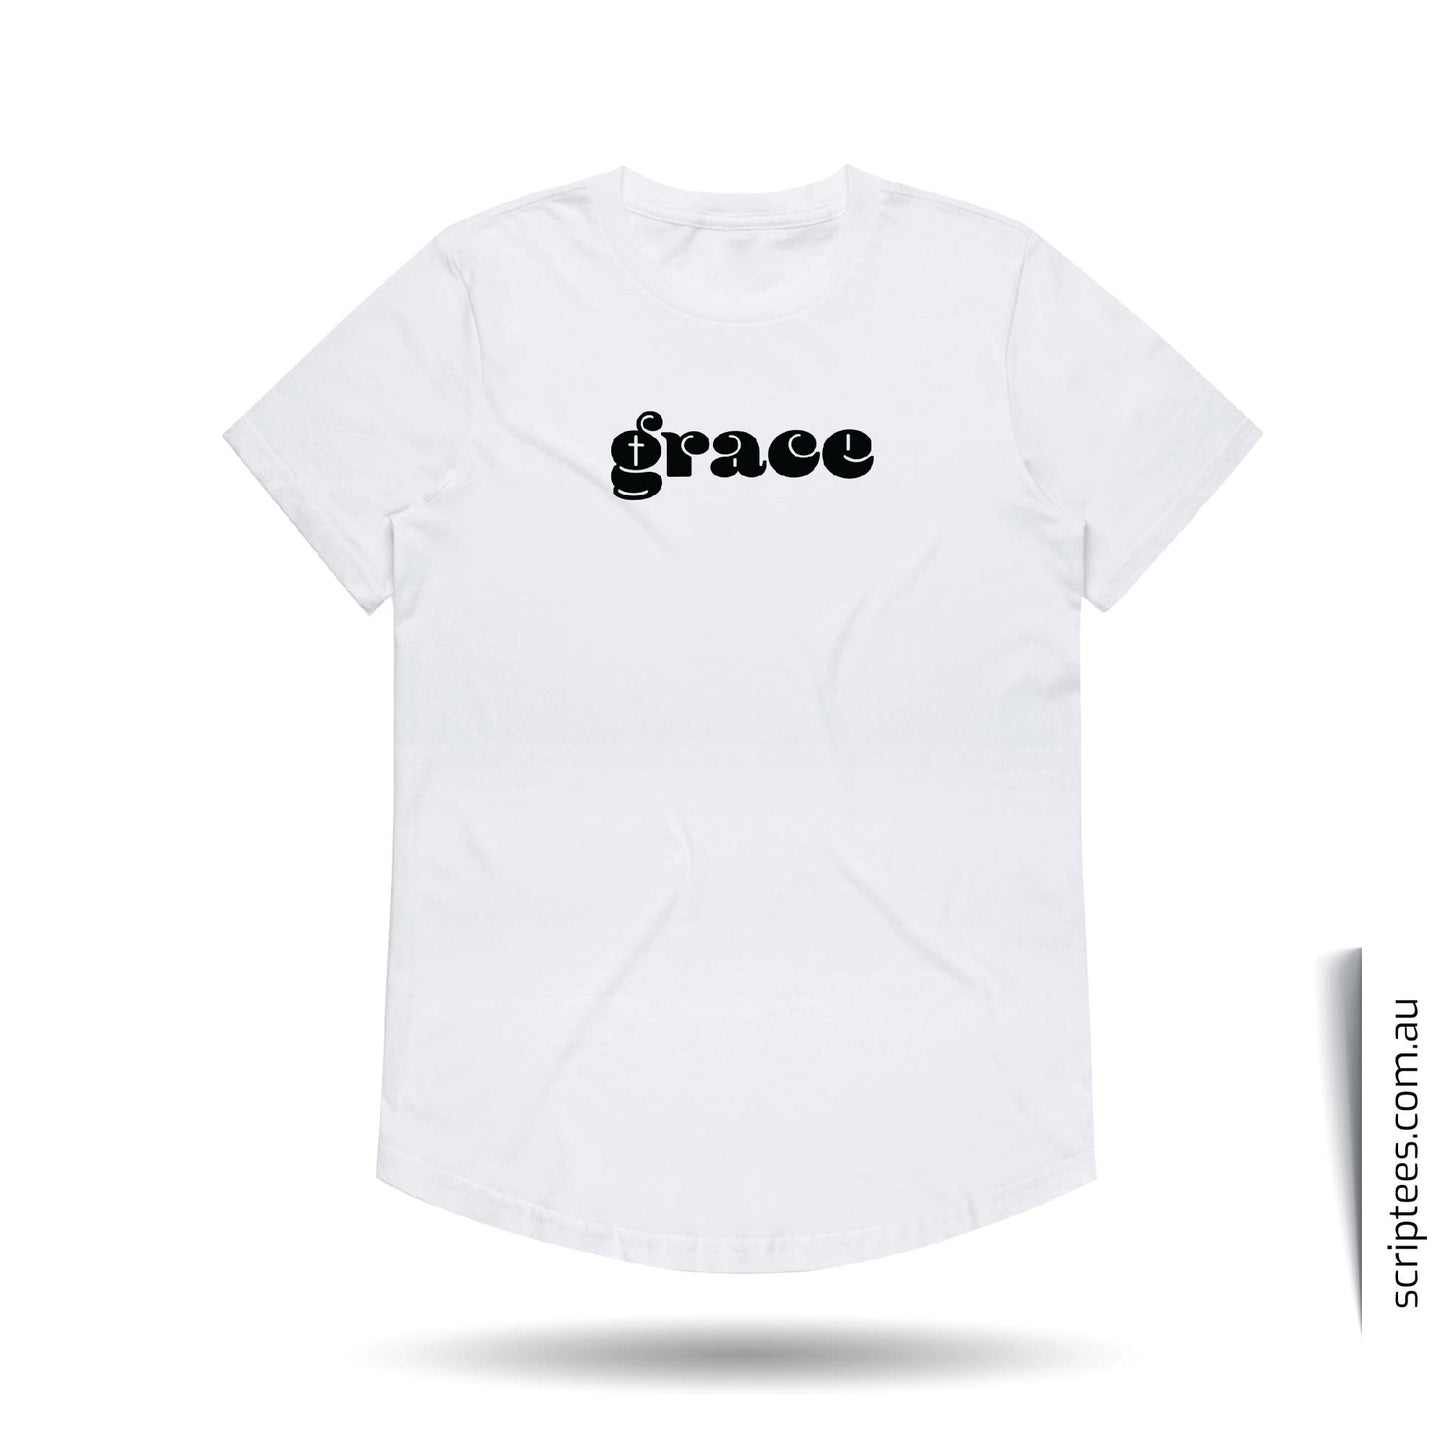 Grace (White)